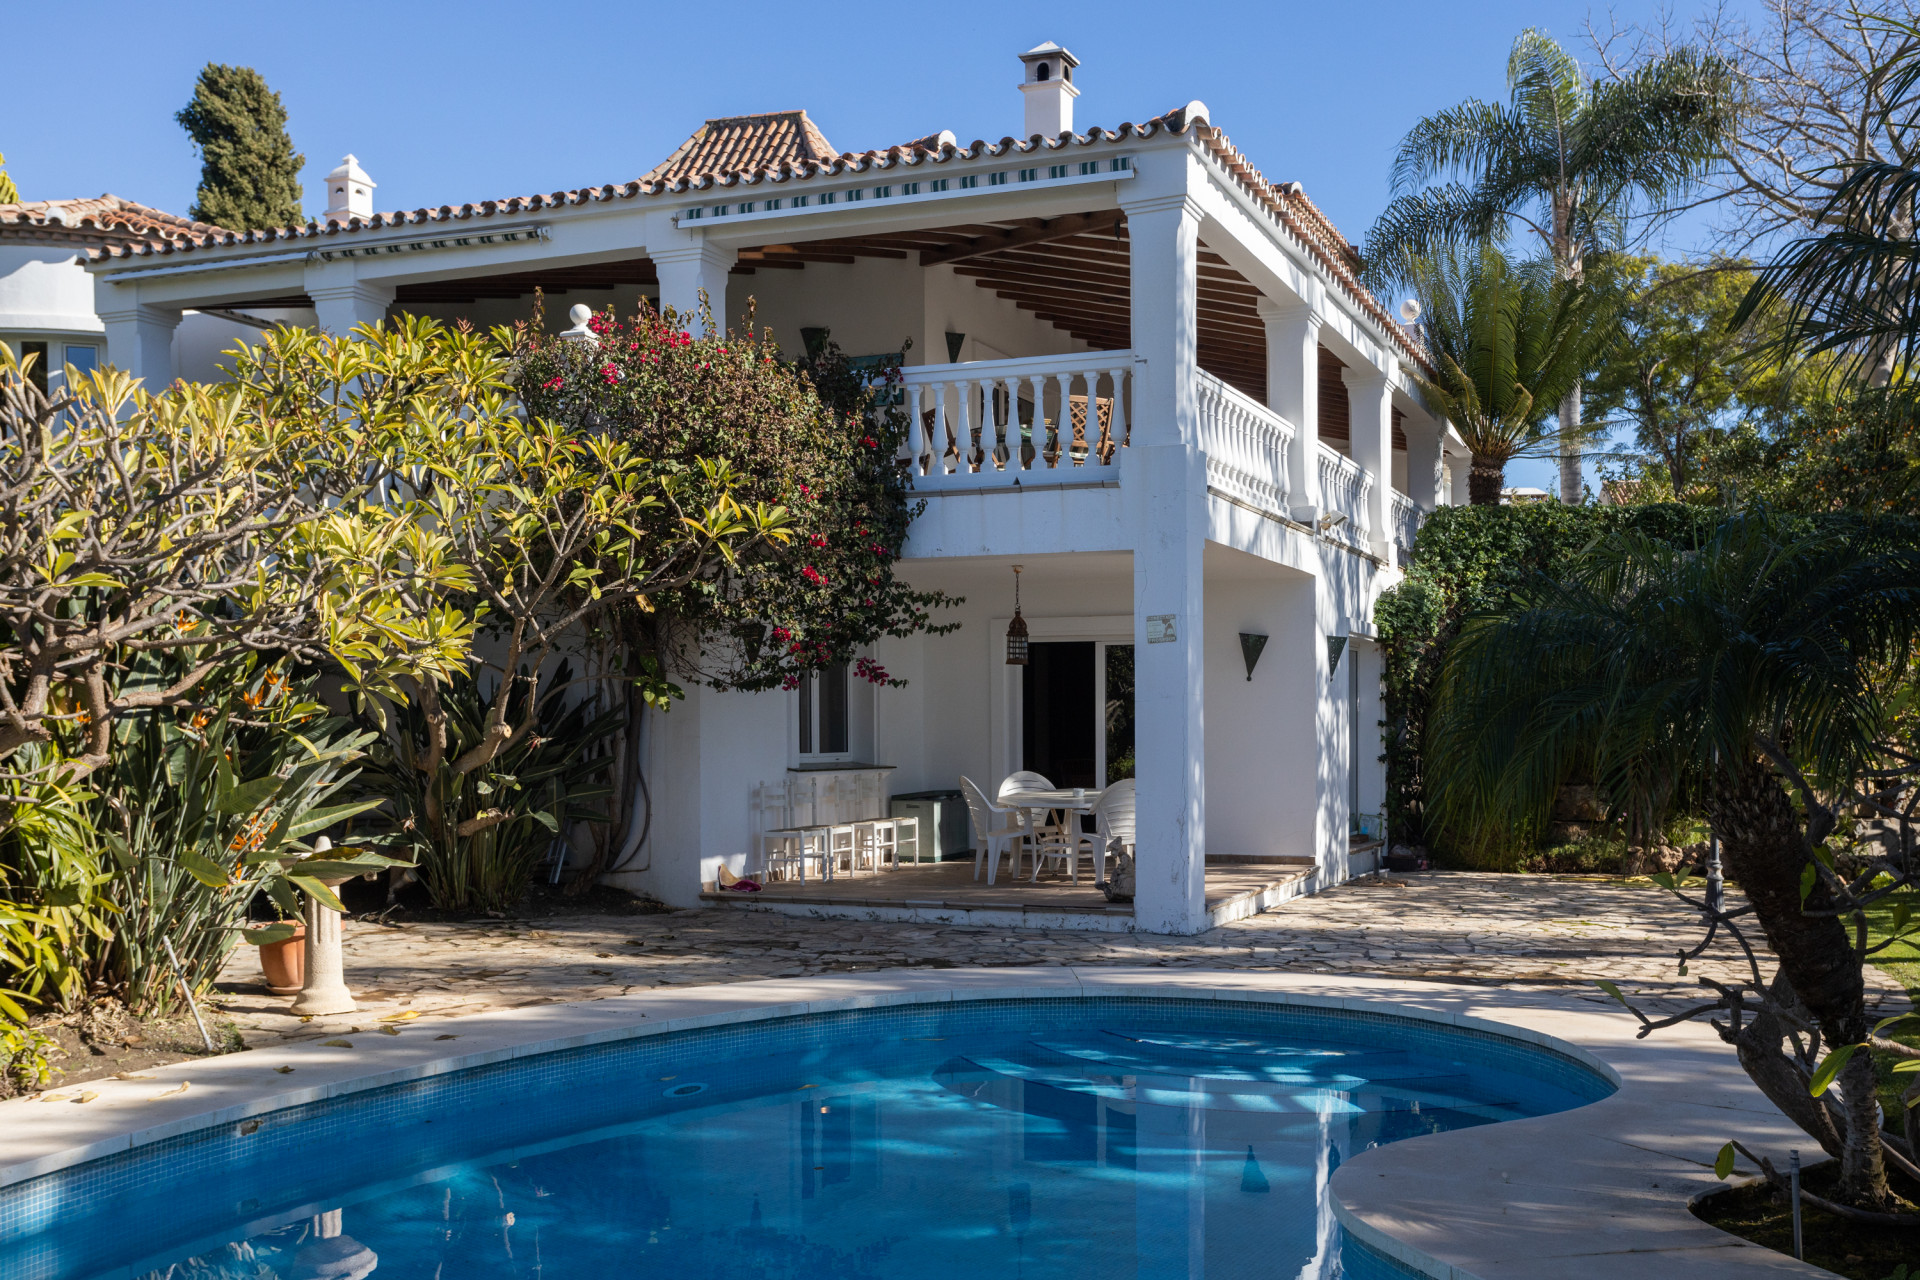 Villa de estilo mediterráneo con vistas al mar